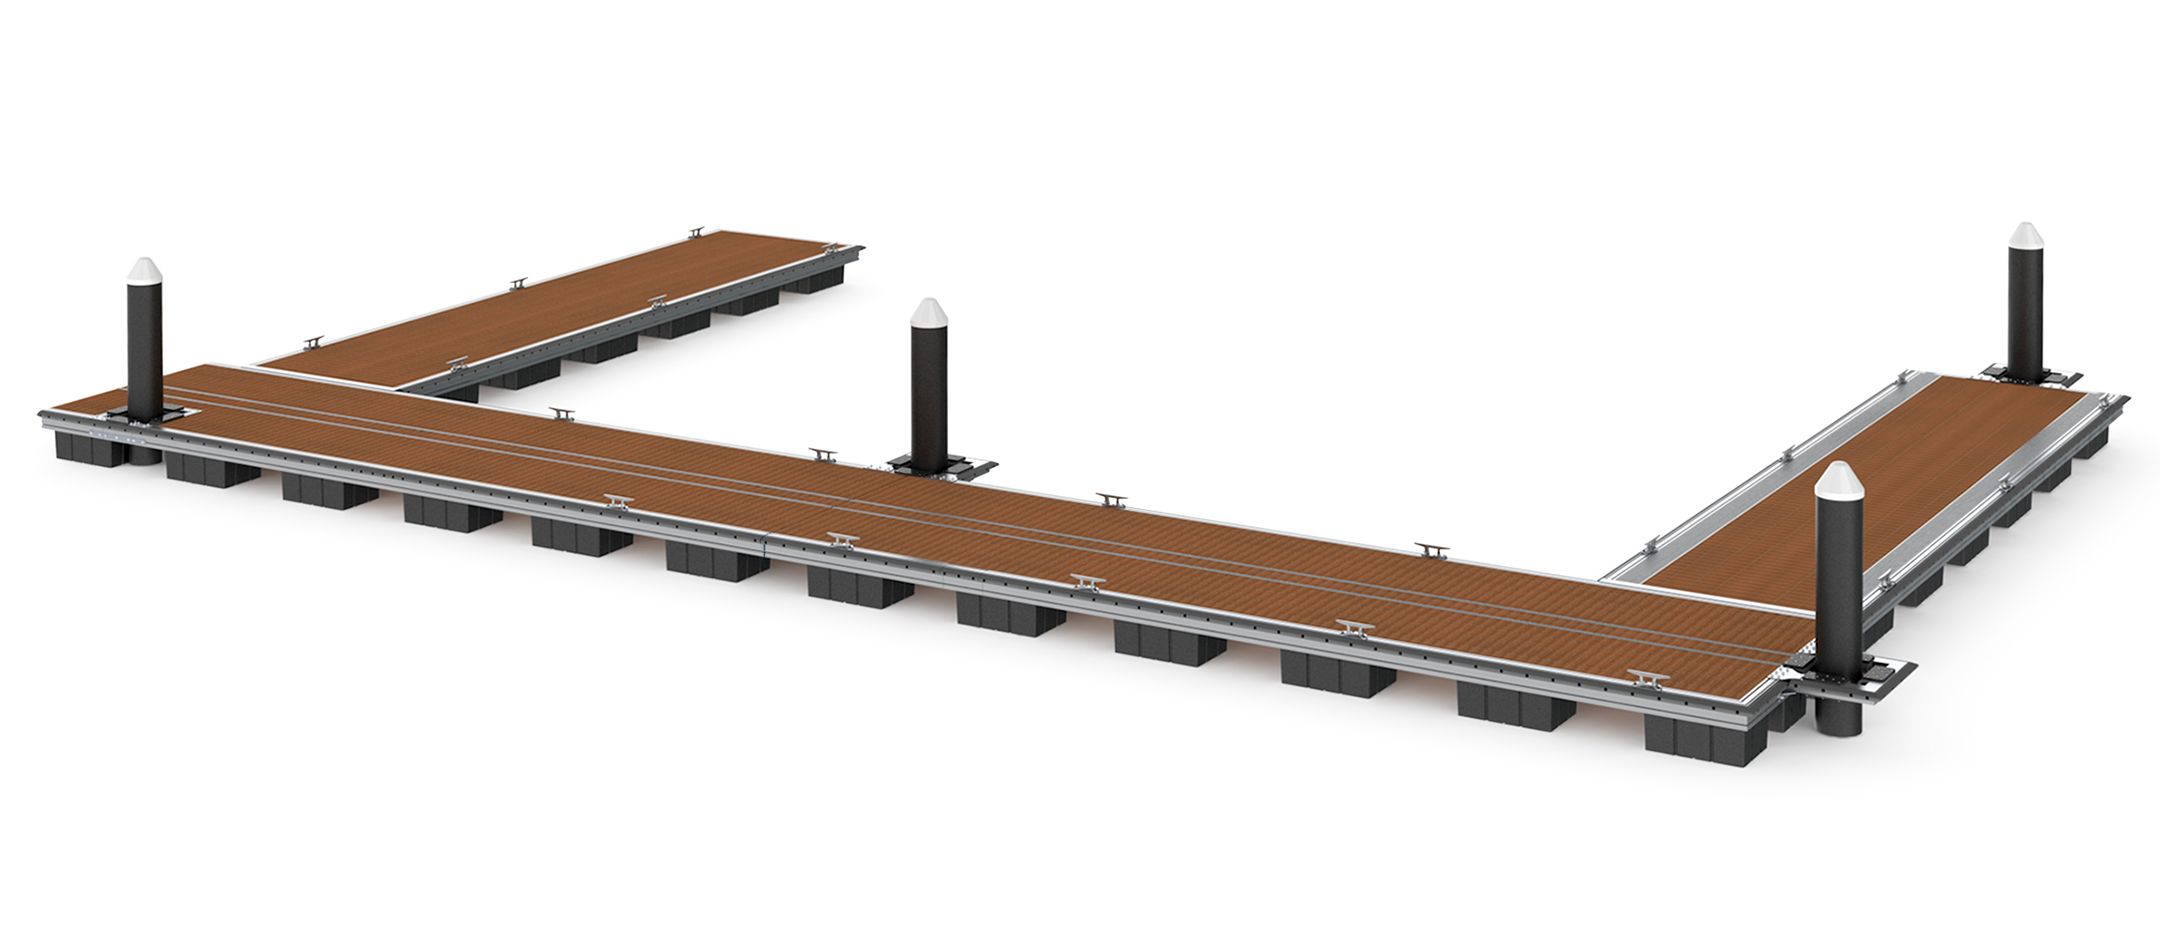 3D rendering of Tri-Ocean floating dock system